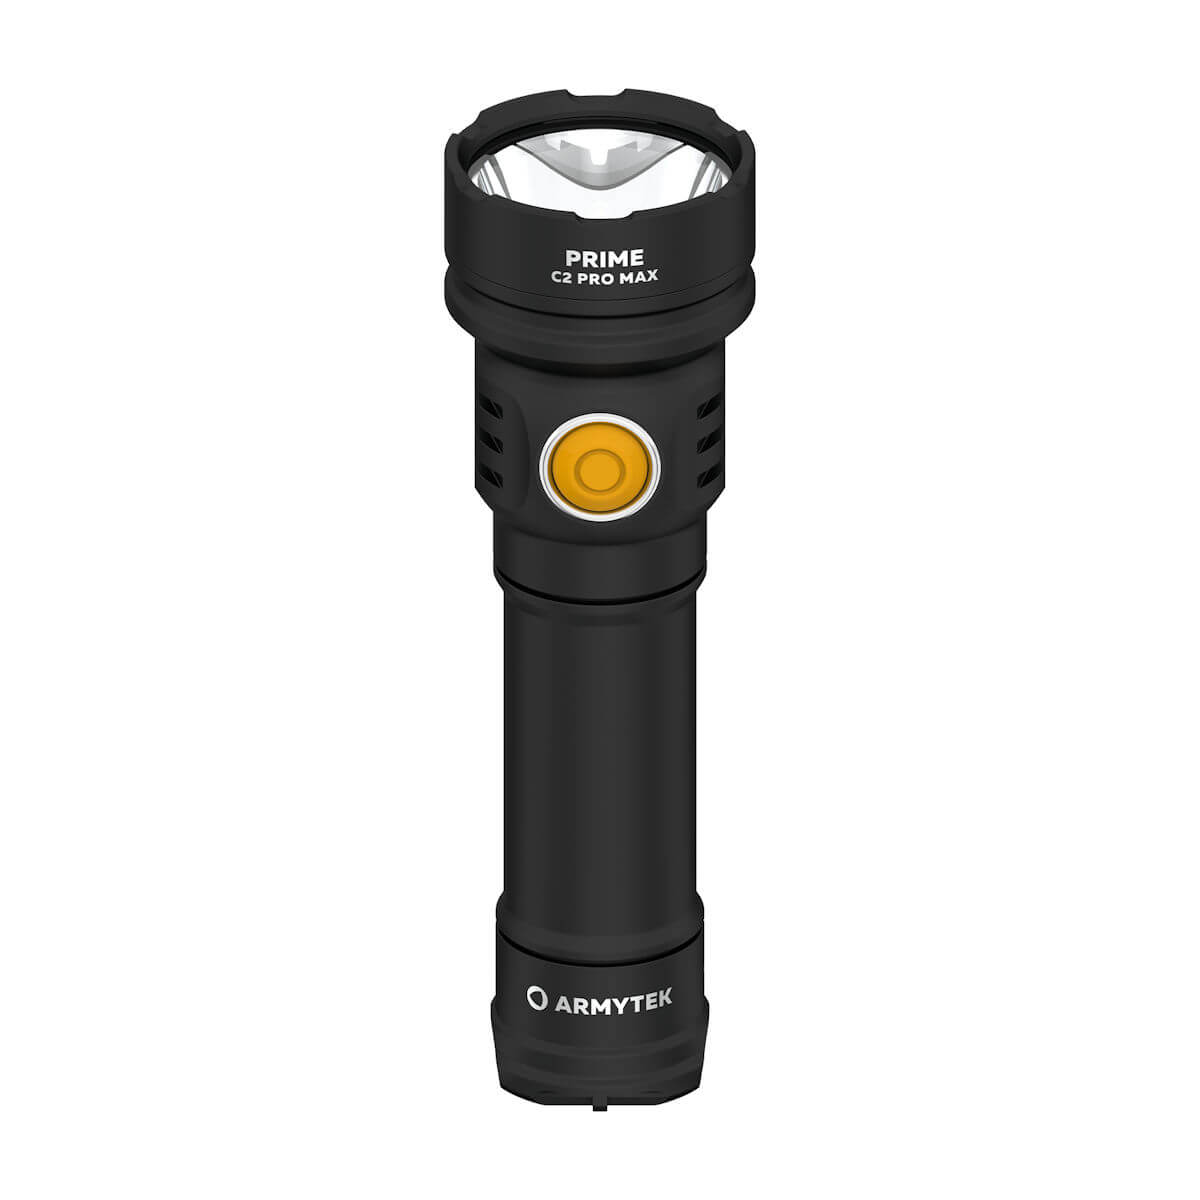 Armytek Prime C2 Pro MAX LED Taschenlampe mit Akku kaltweiss LED-Taschenlampe Taschenlampe